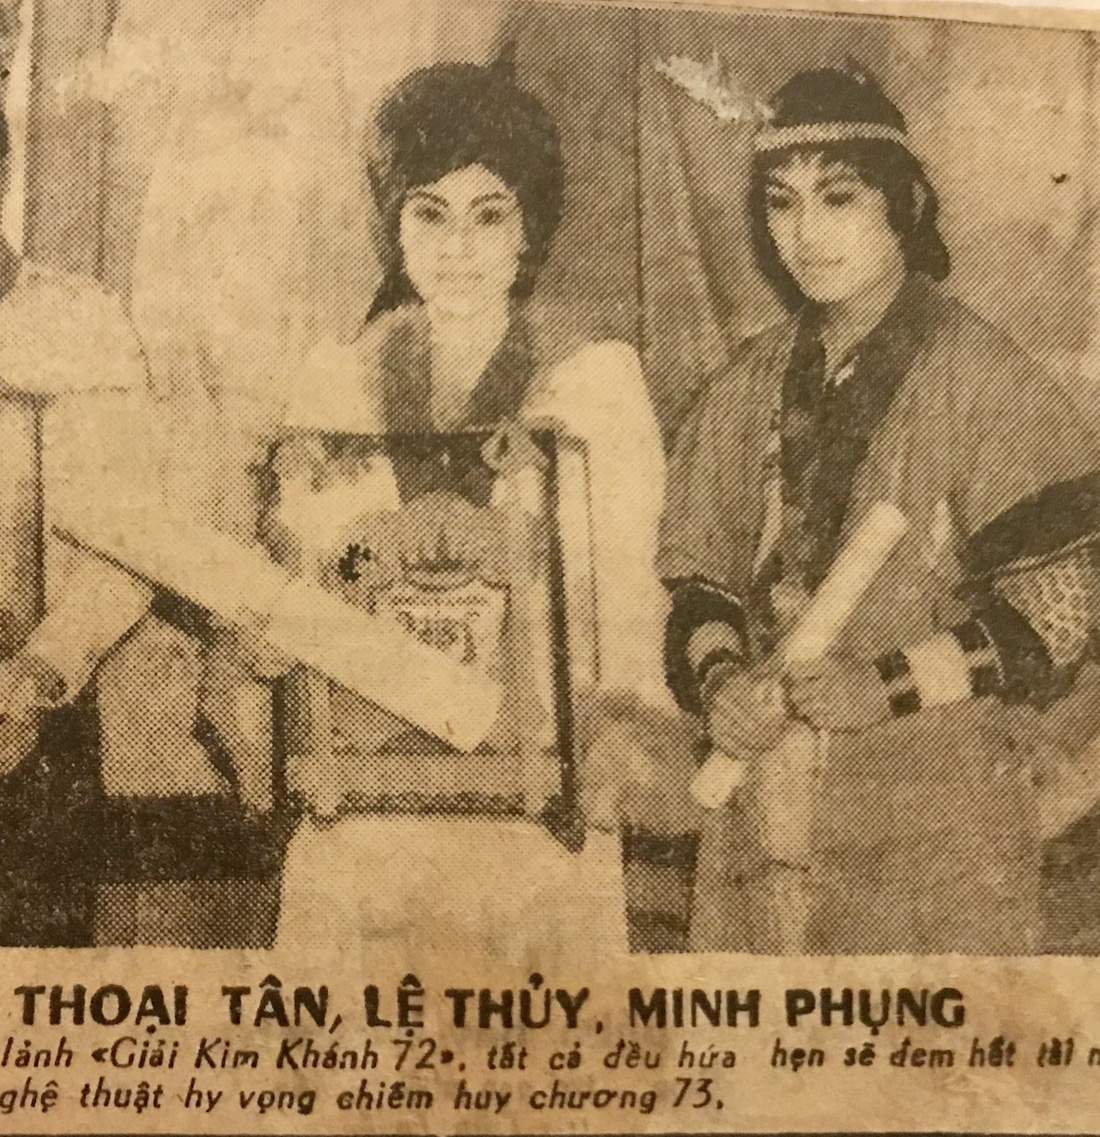 Hình nghệ sĩ Lệ Thủy, Minh Phụng đoạt giải Kim Khánh năm 1972 - Ảnh: ĐÌNH TRÍ